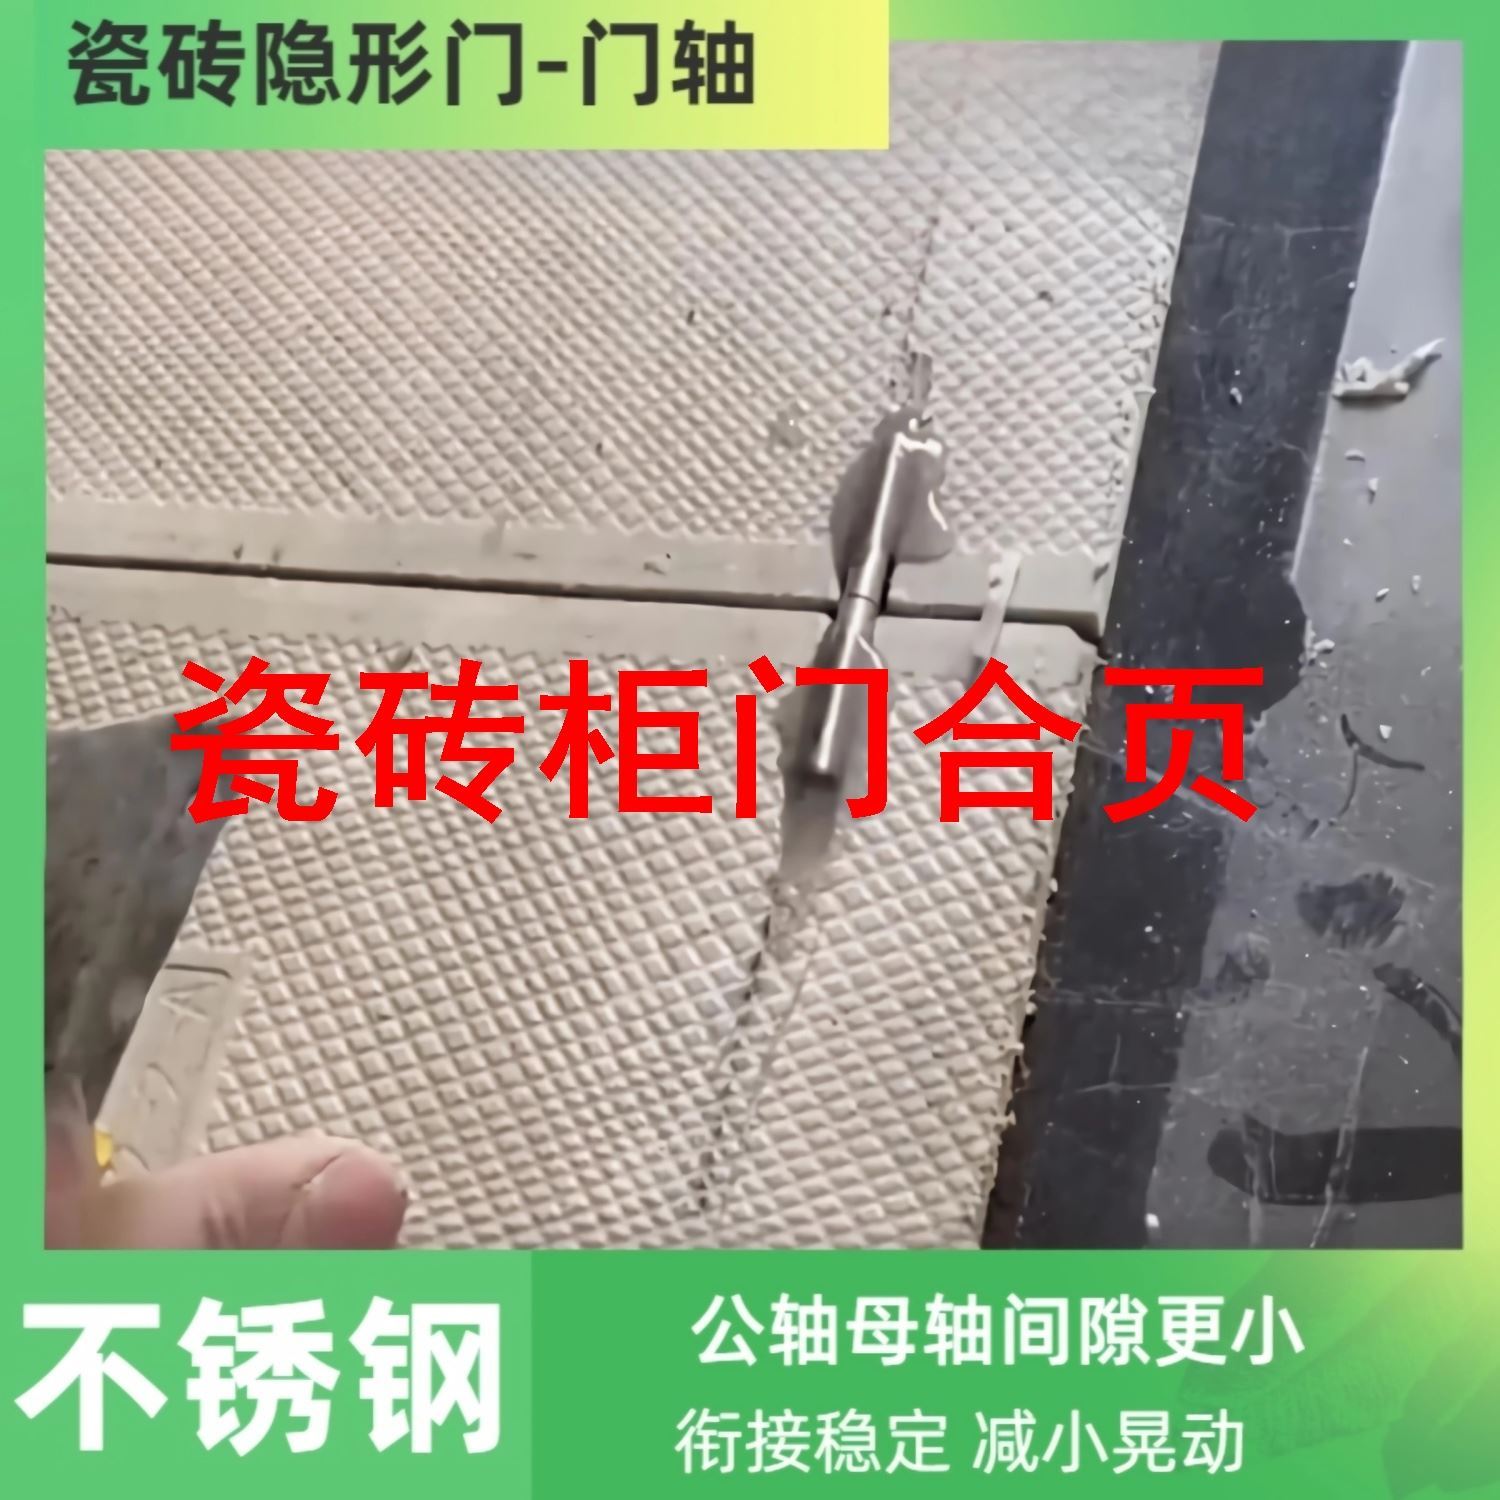 Tile Cabinet Door Hinge Tile Hinge Tiles Invisible Door shaft stone Concealed Door Hinge Sewer Overhaul-Taobao